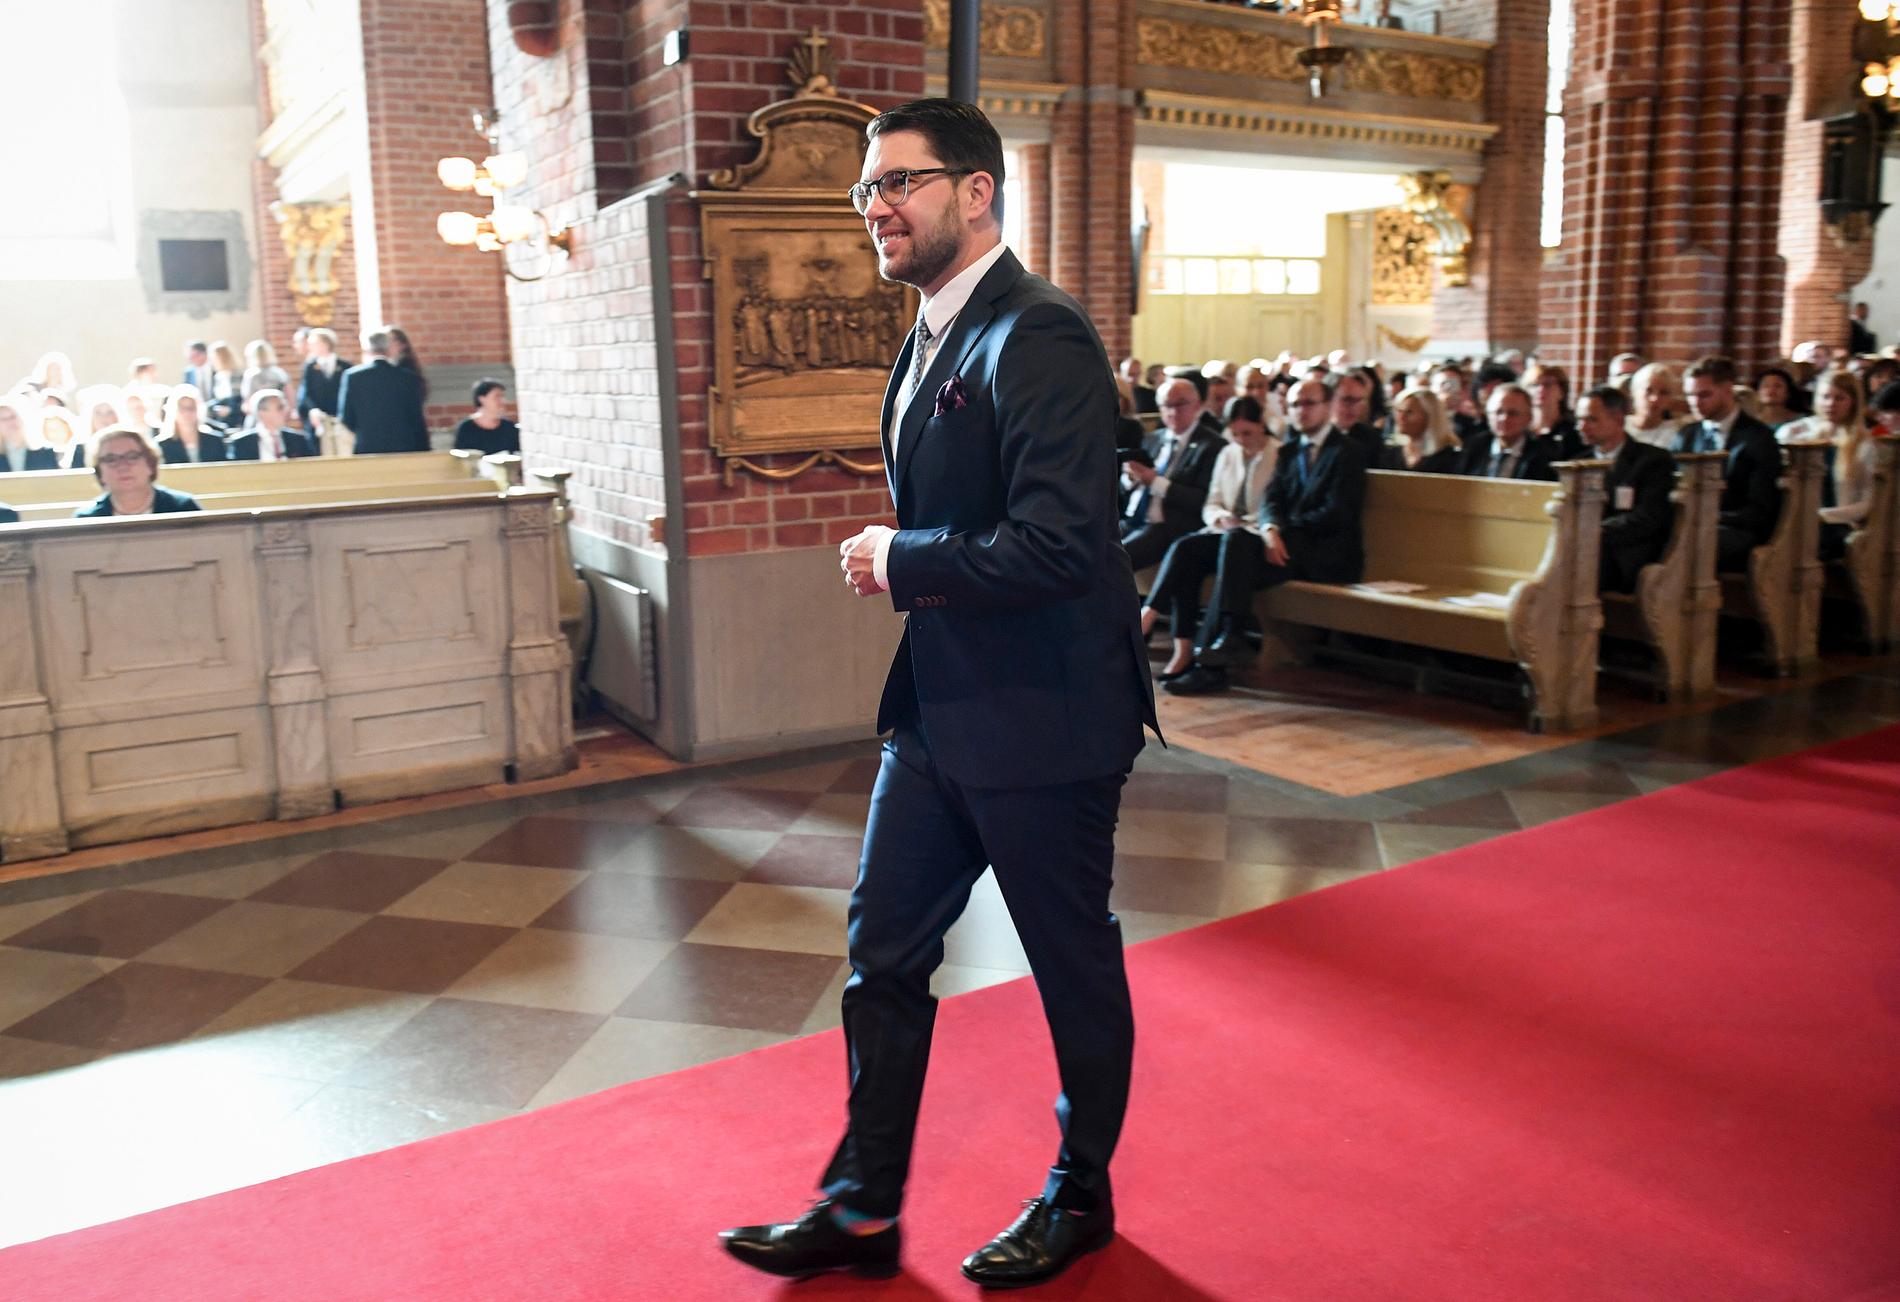 Sverigedemokraternas partiledare Jimmie Åkesson anländer till gudtjänsten i Storkyrkan i samband med Riksmötets öppnande.